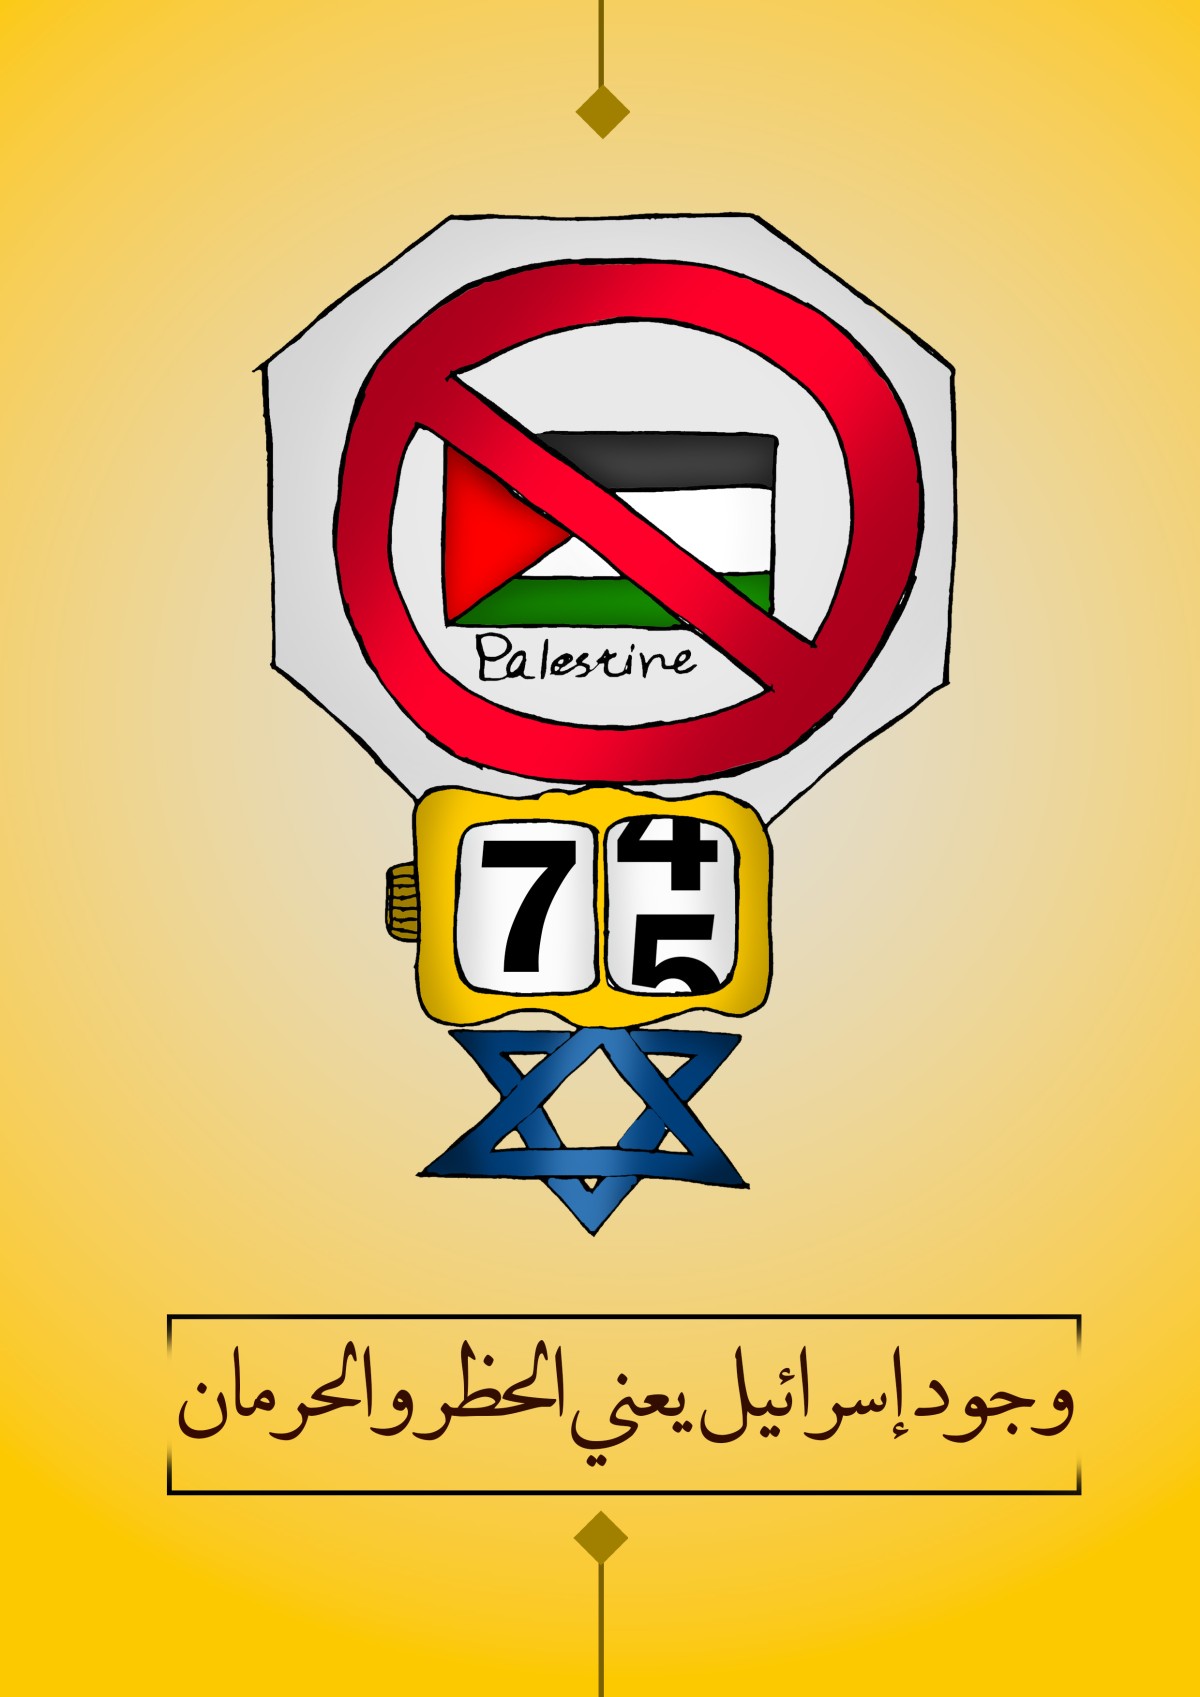 كاريكاتير / وجود إسرائيل يعني الحظر والحرمان